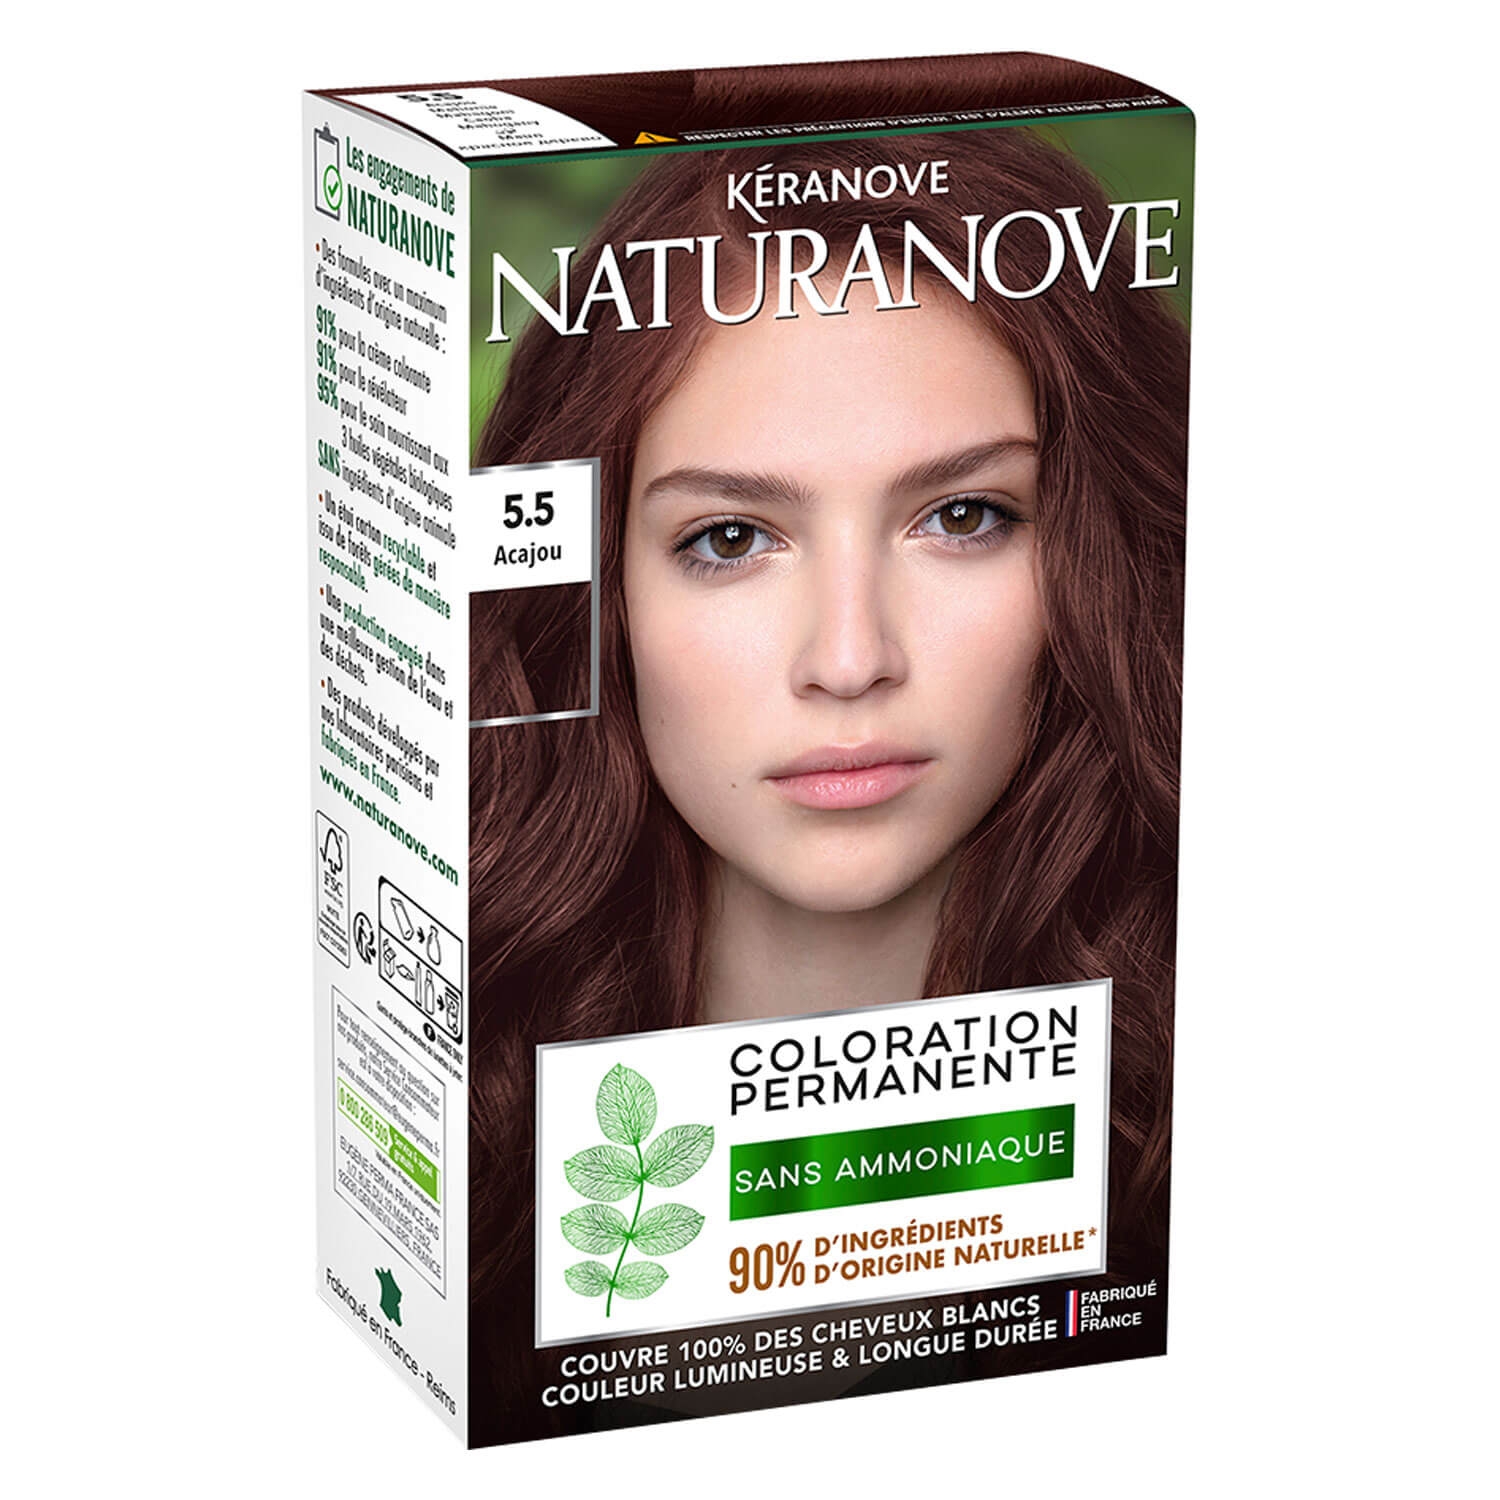 Produktbild von Naturanove - Dauerhafte Haarfarbe Mahagoni 5.5